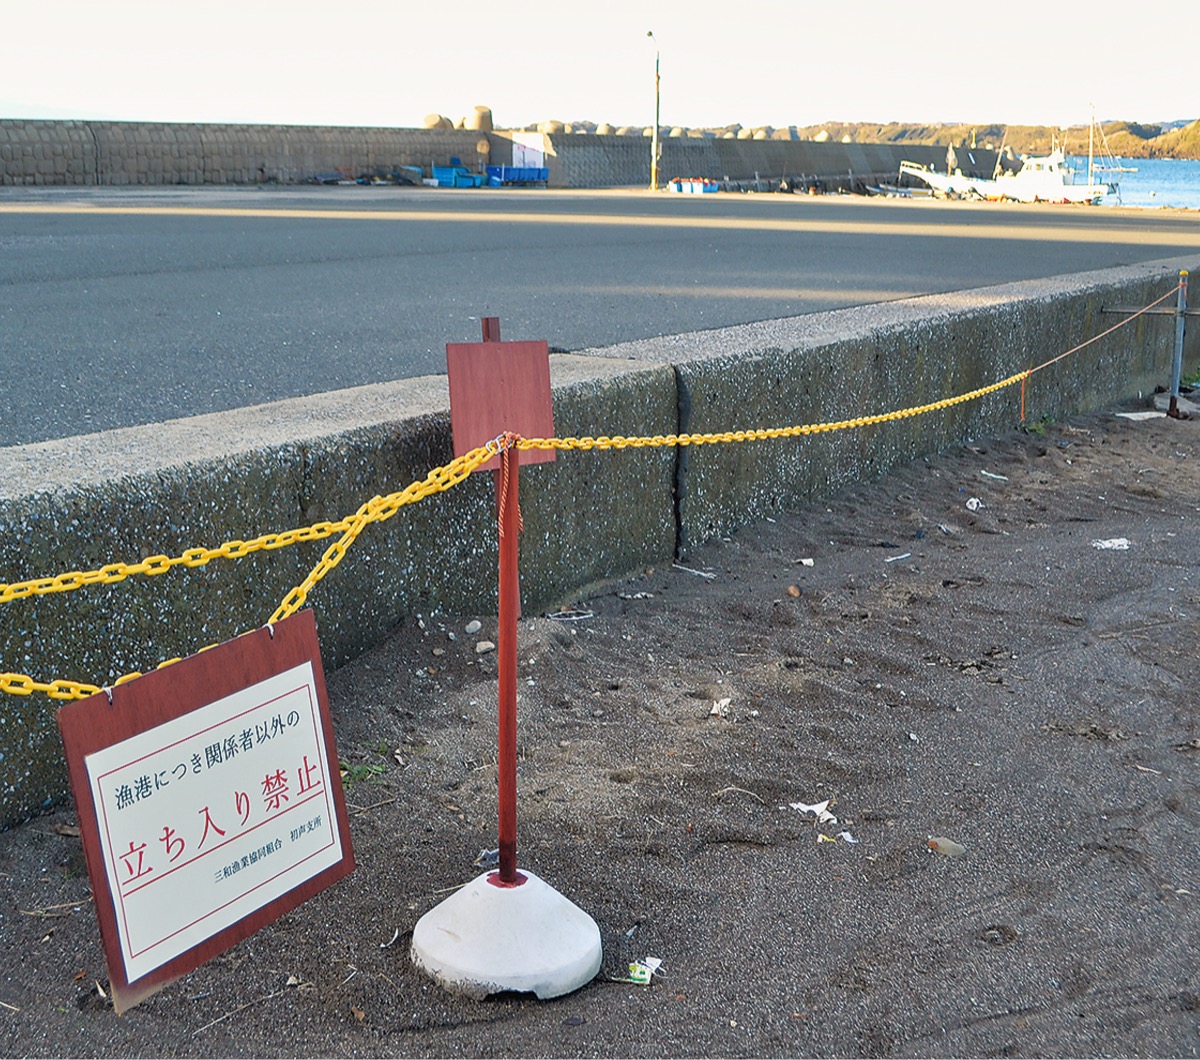 三戸浜 迷惑キャンプお断り 漁港区域の釣りも全面禁止 三浦 タウンニュース